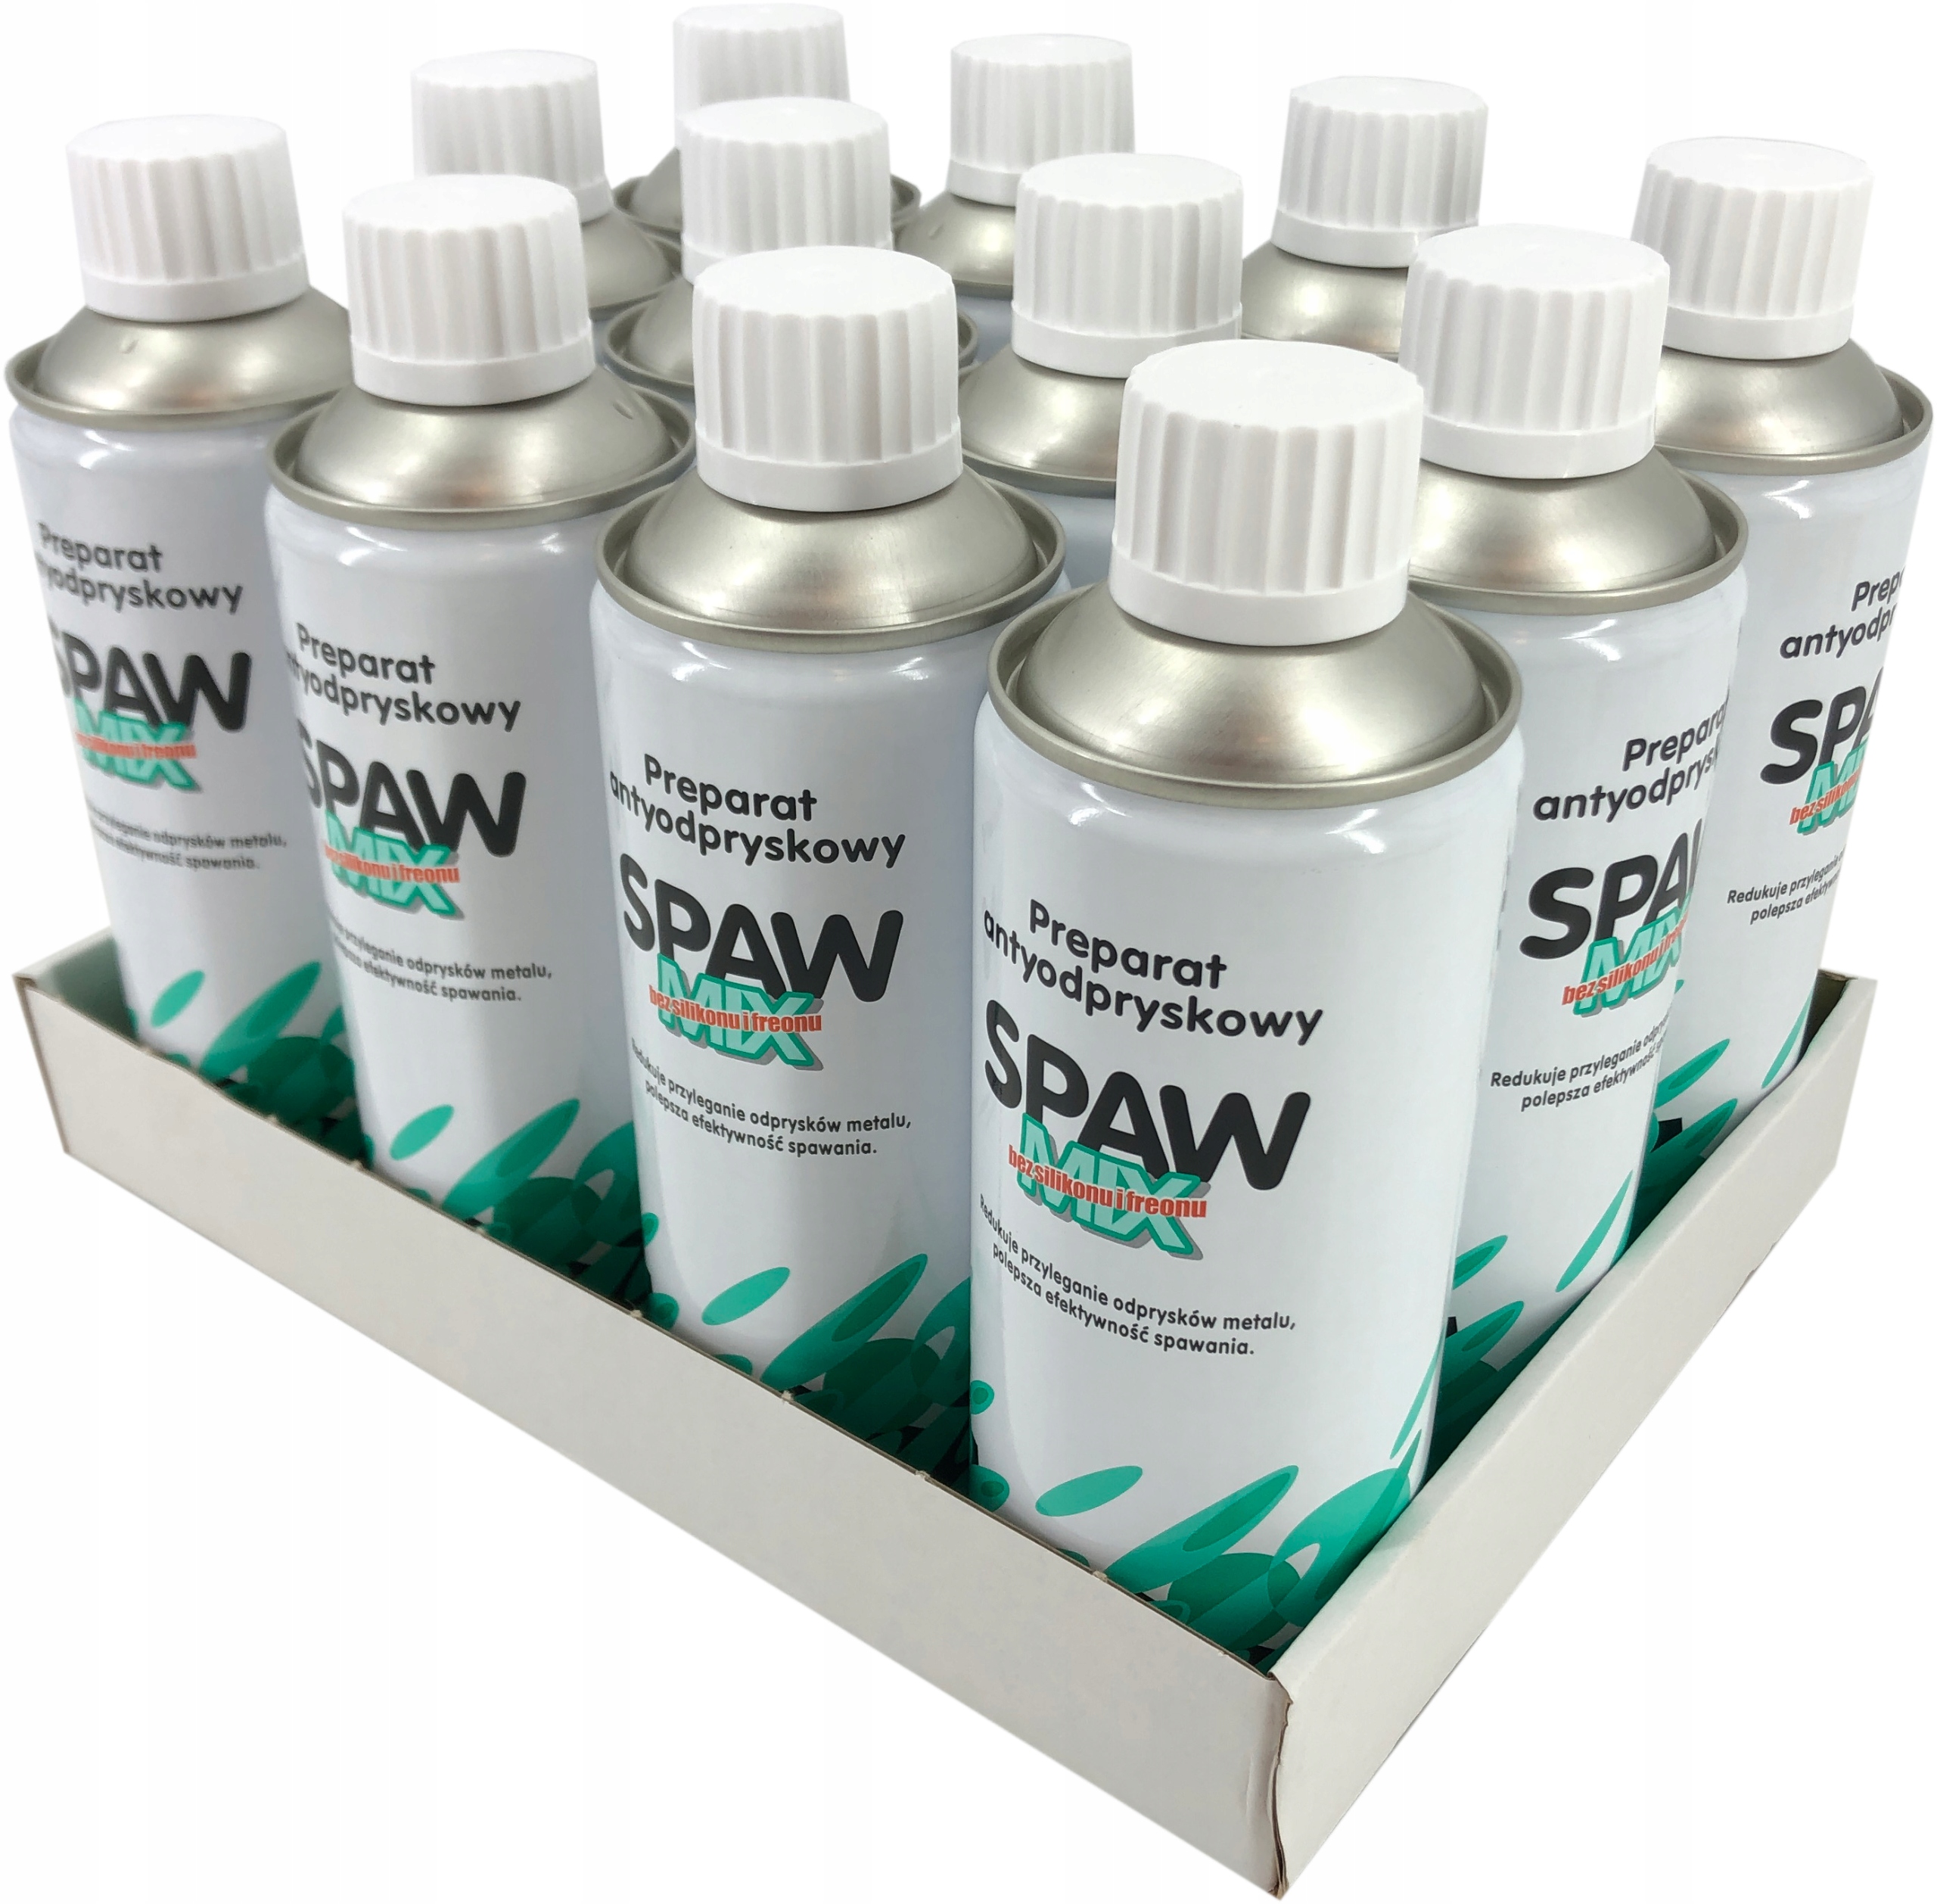 Спрей SPAWMIX для запобігання налипанню бризок (400 мл)